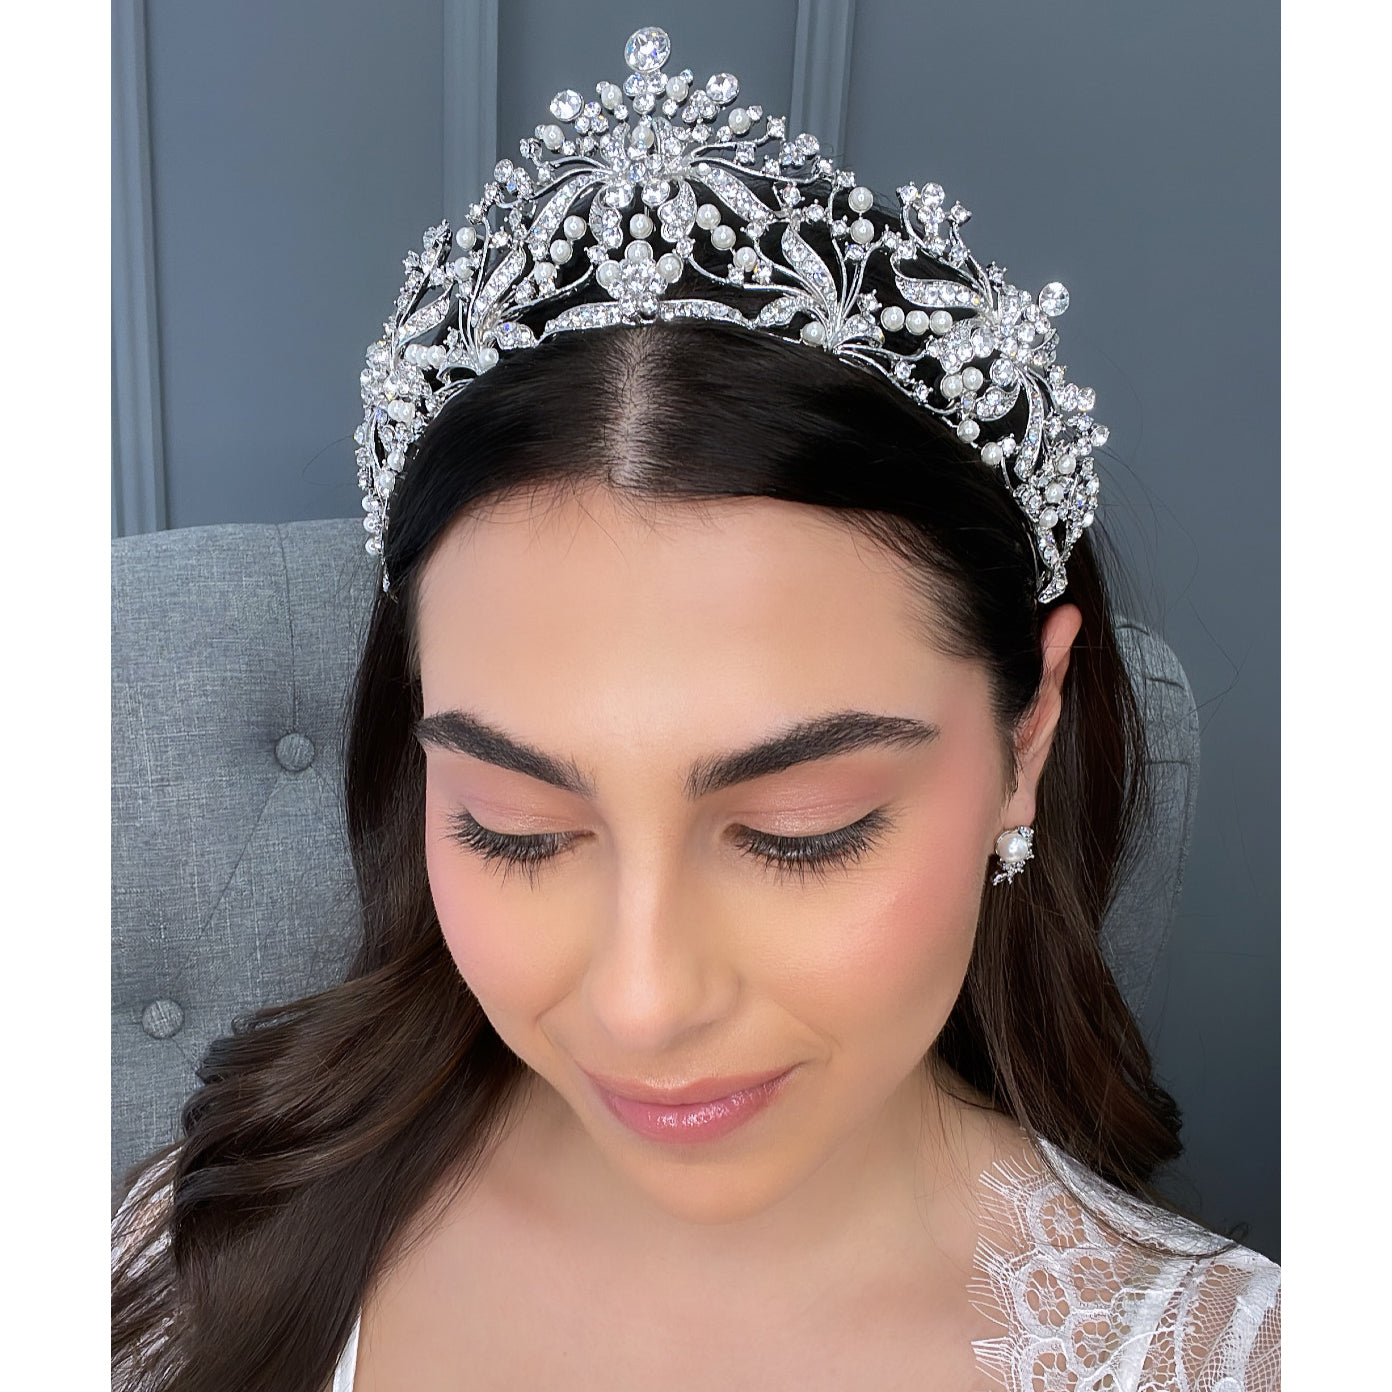 Salena Crown Hair Accessories - Tiara & Crown  Silver  